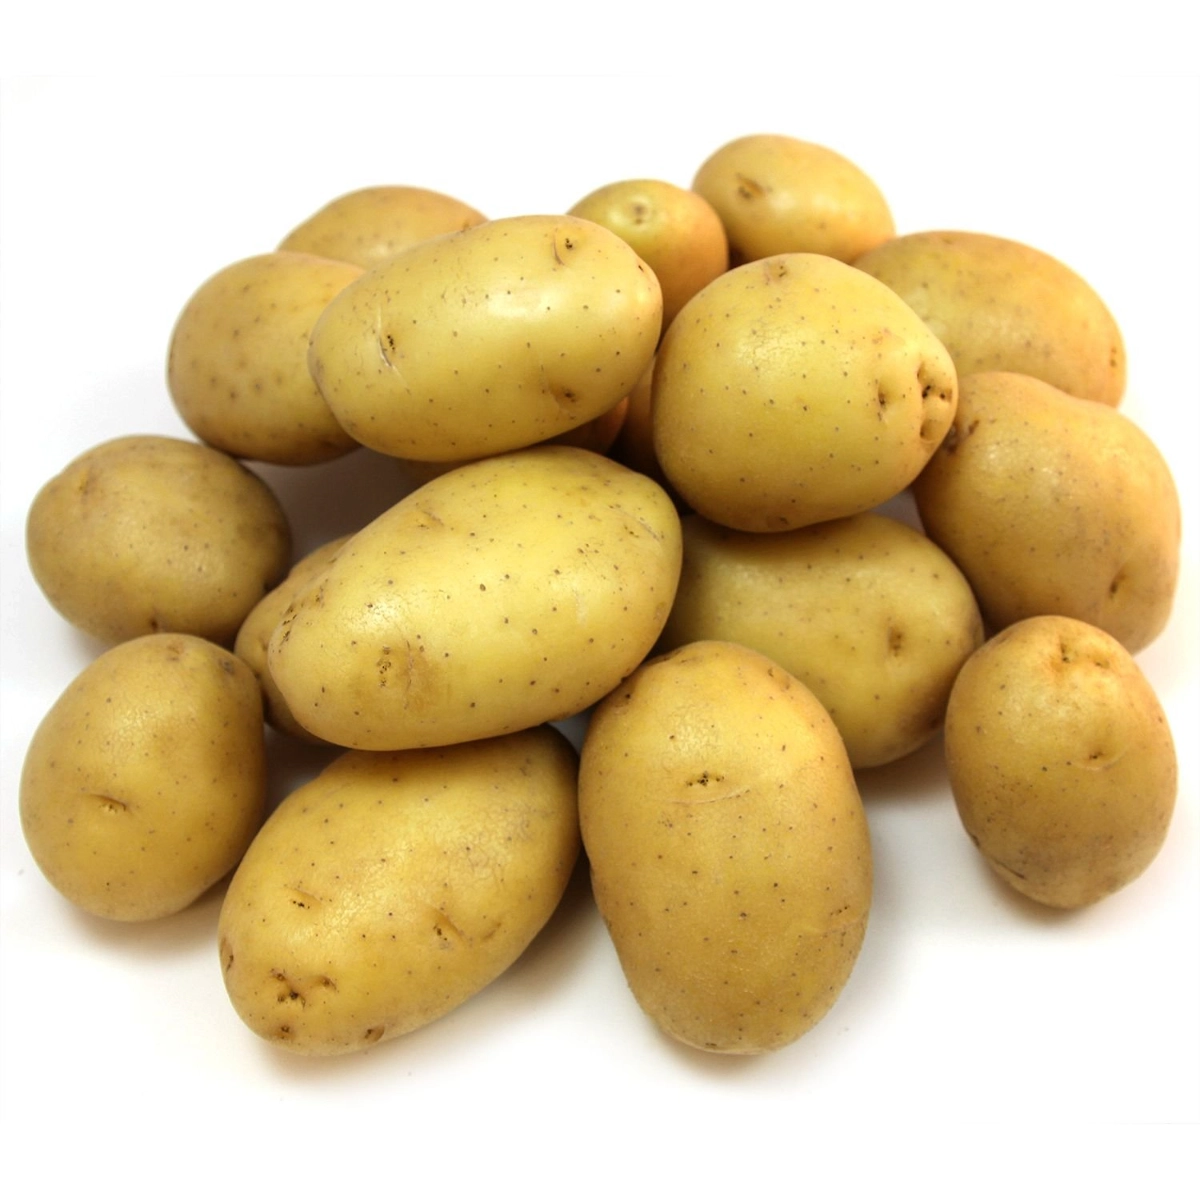 red-potato-15-pounds